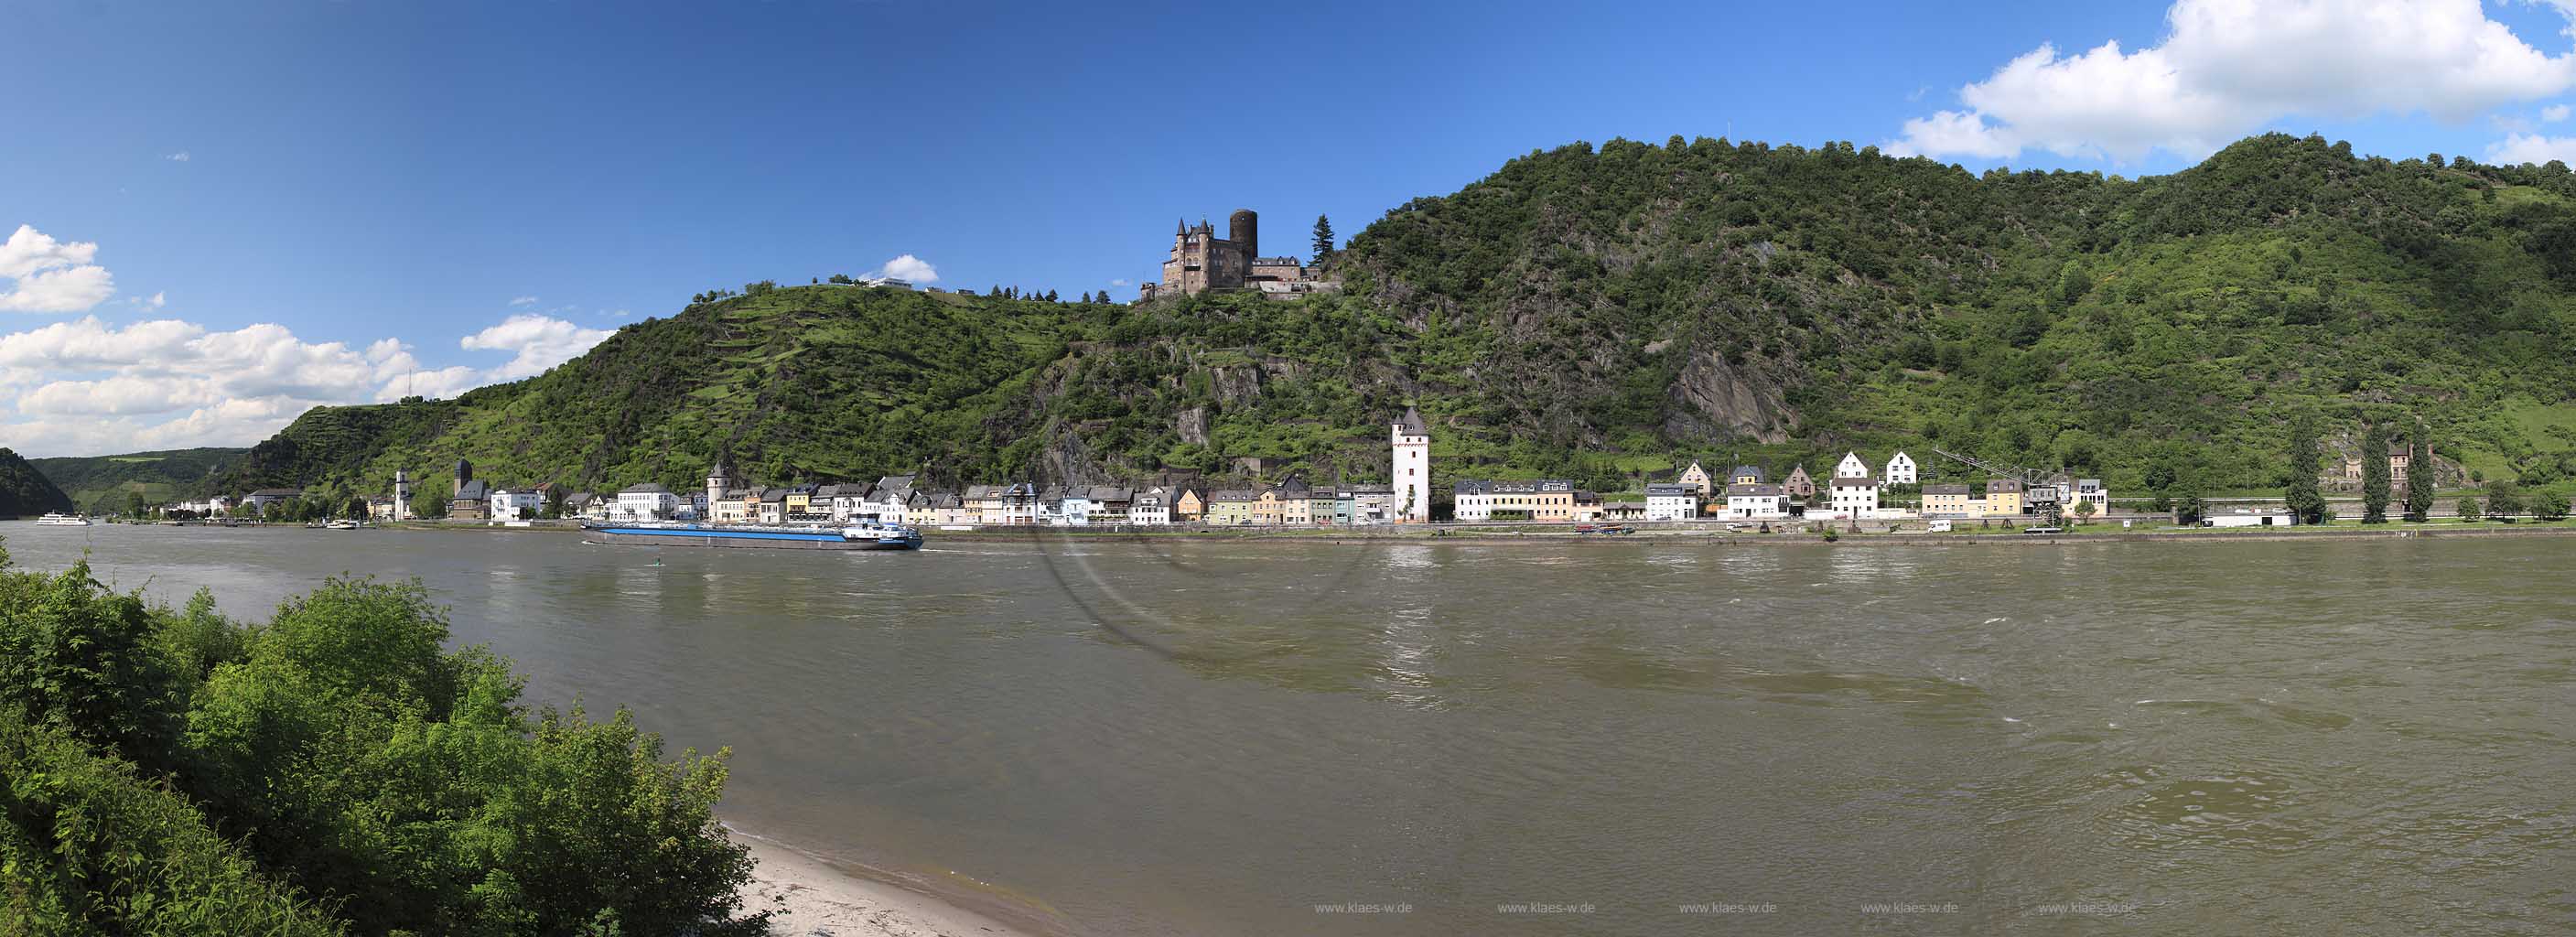 Sankt Goashausen, Extrem Panorama Blick ueber den Rhein zur Stadt mit Burg Katz; Most impressive panorama view over Rhine river to town of St. Goareshausen and castle Katz